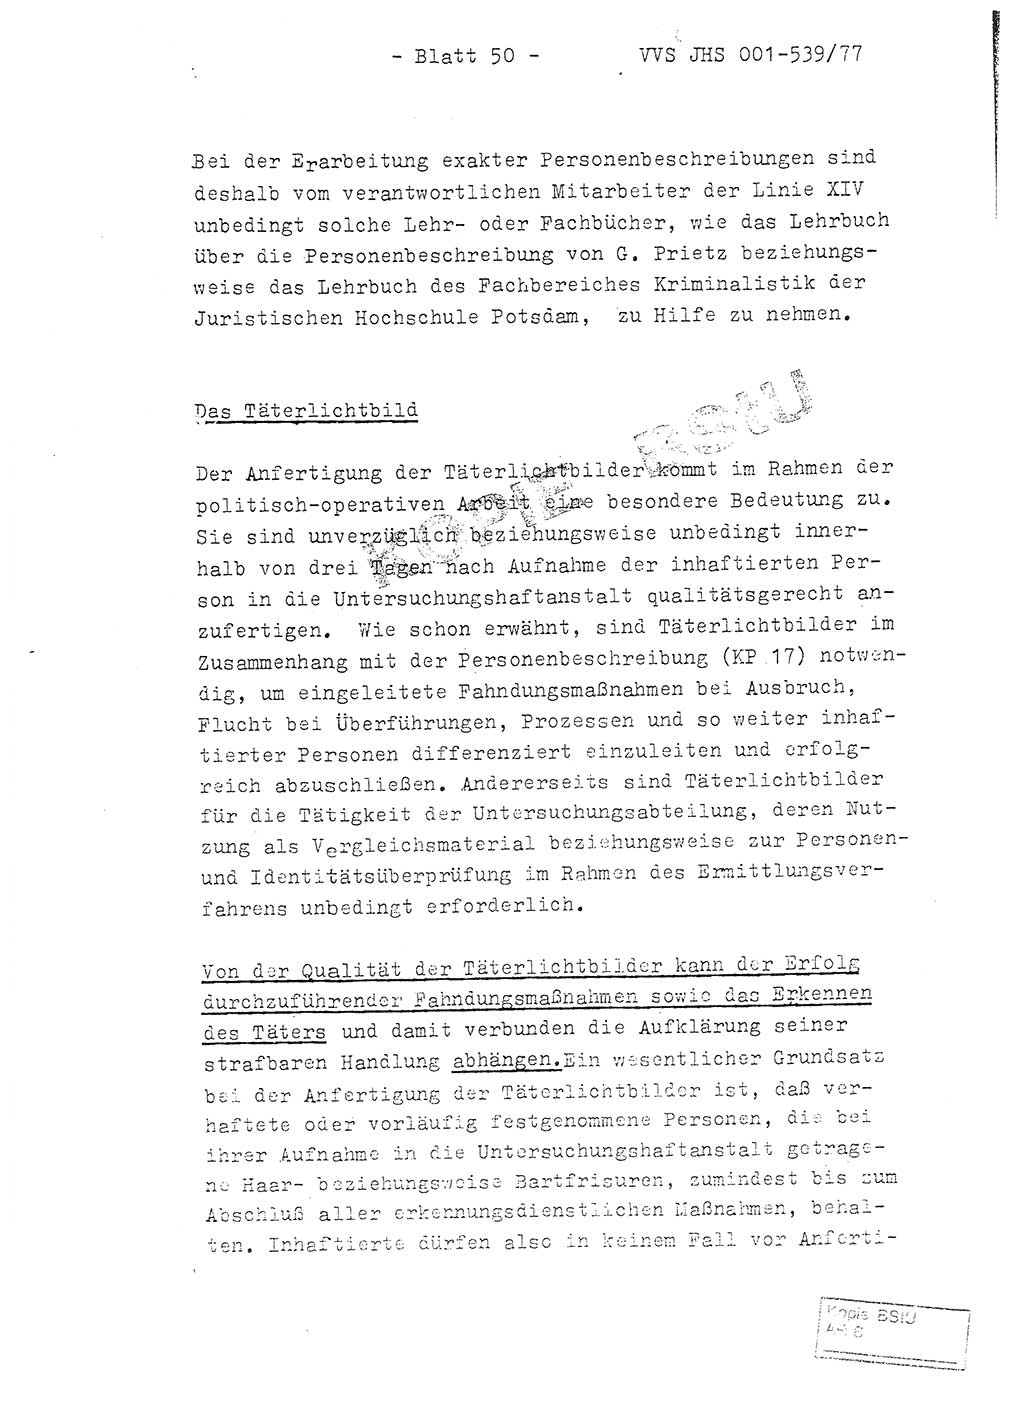 Fachschulabschlußarbeit Hauptmann Dietrich Jung (Abt. ⅩⅣ), Leutnant Klaus Klötzner (Abt. ⅩⅣ), Ministerium für Staatssicherheit (MfS) [Deutsche Demokratische Republik (DDR)], Juristische Hochschule (JHS), Vertrauliche Verschlußsache (VVS) 001-539/77, Potsdam 1978, Seite 50 (FS-Abschl.-Arb. MfS DDR JHS VVS 001-539/77 1978, S. 50)